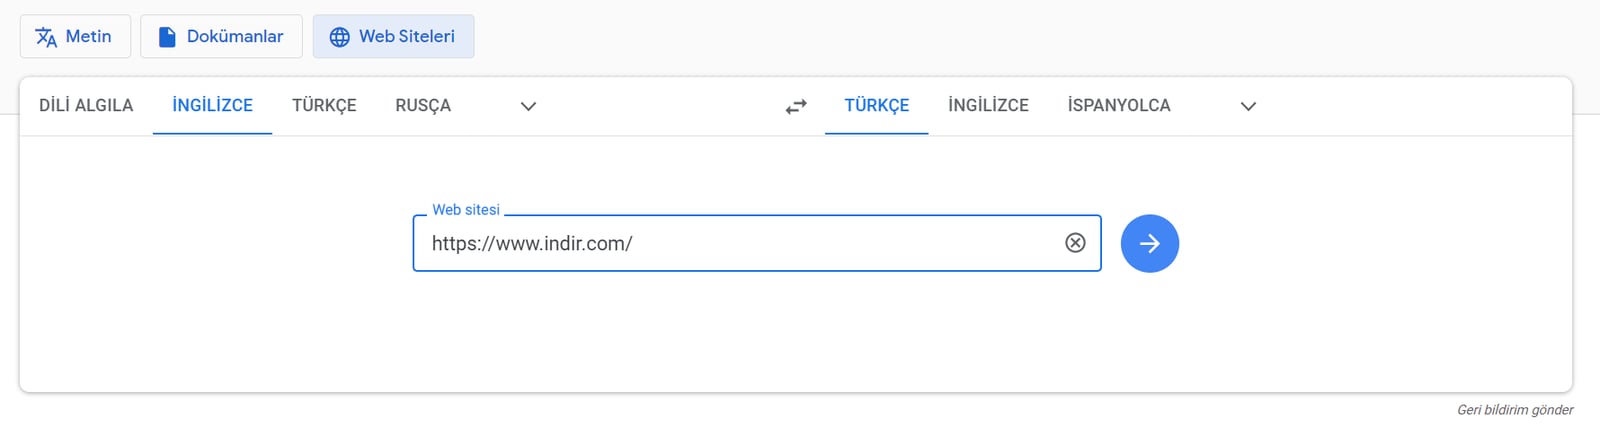 google translate daha etkin kullanmanizi saglayacak x ozellik 2